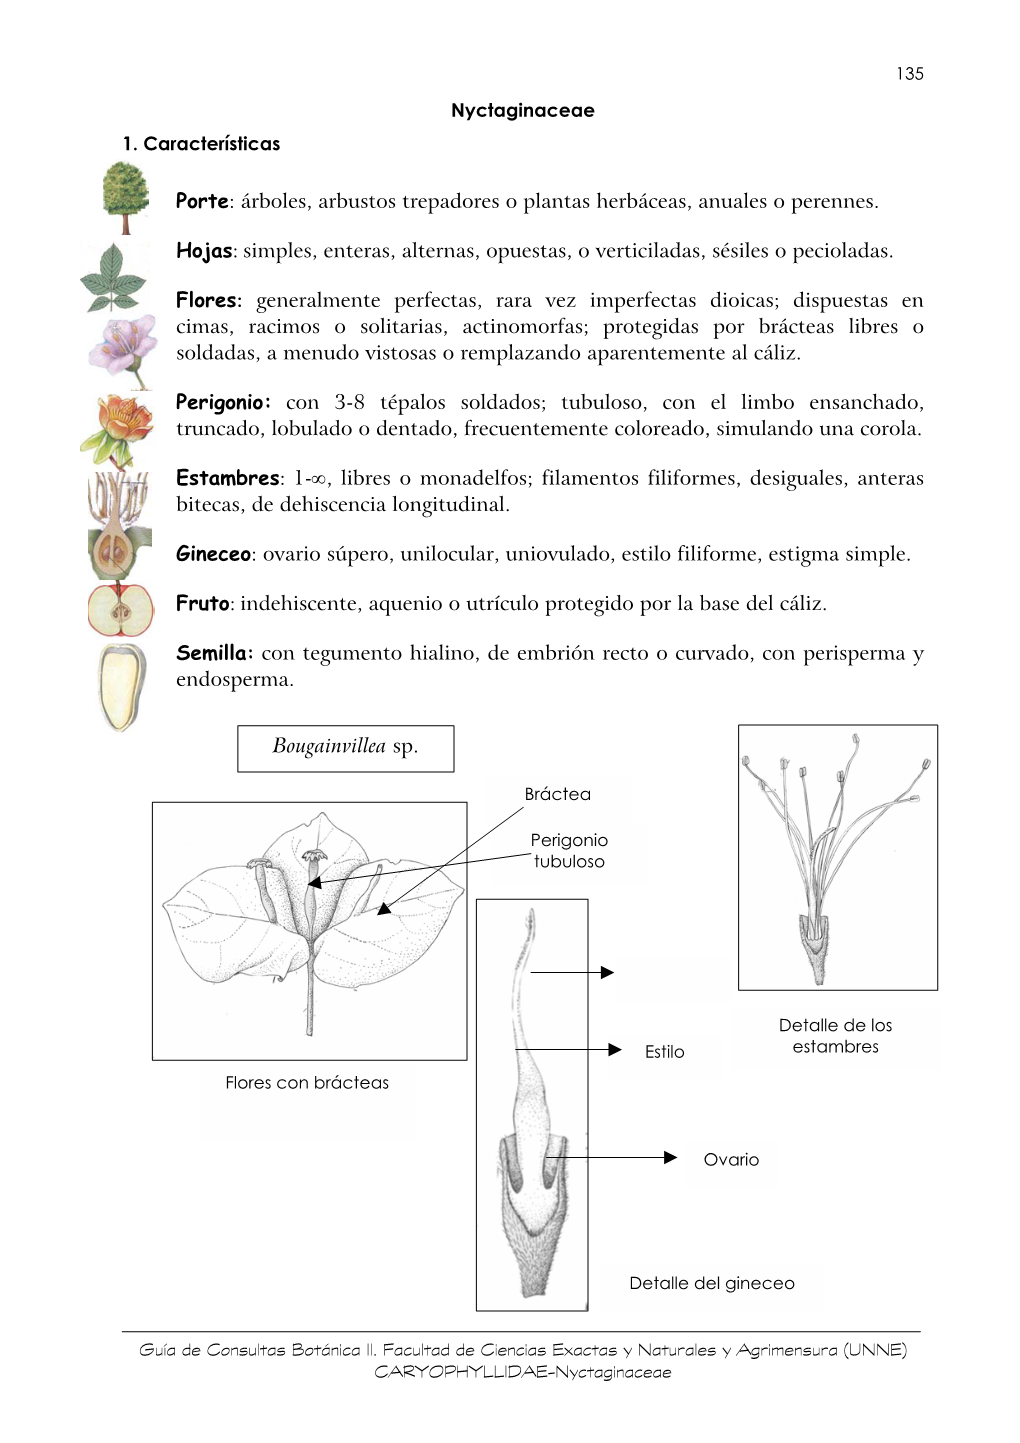 Familia: Nyctaginaceae